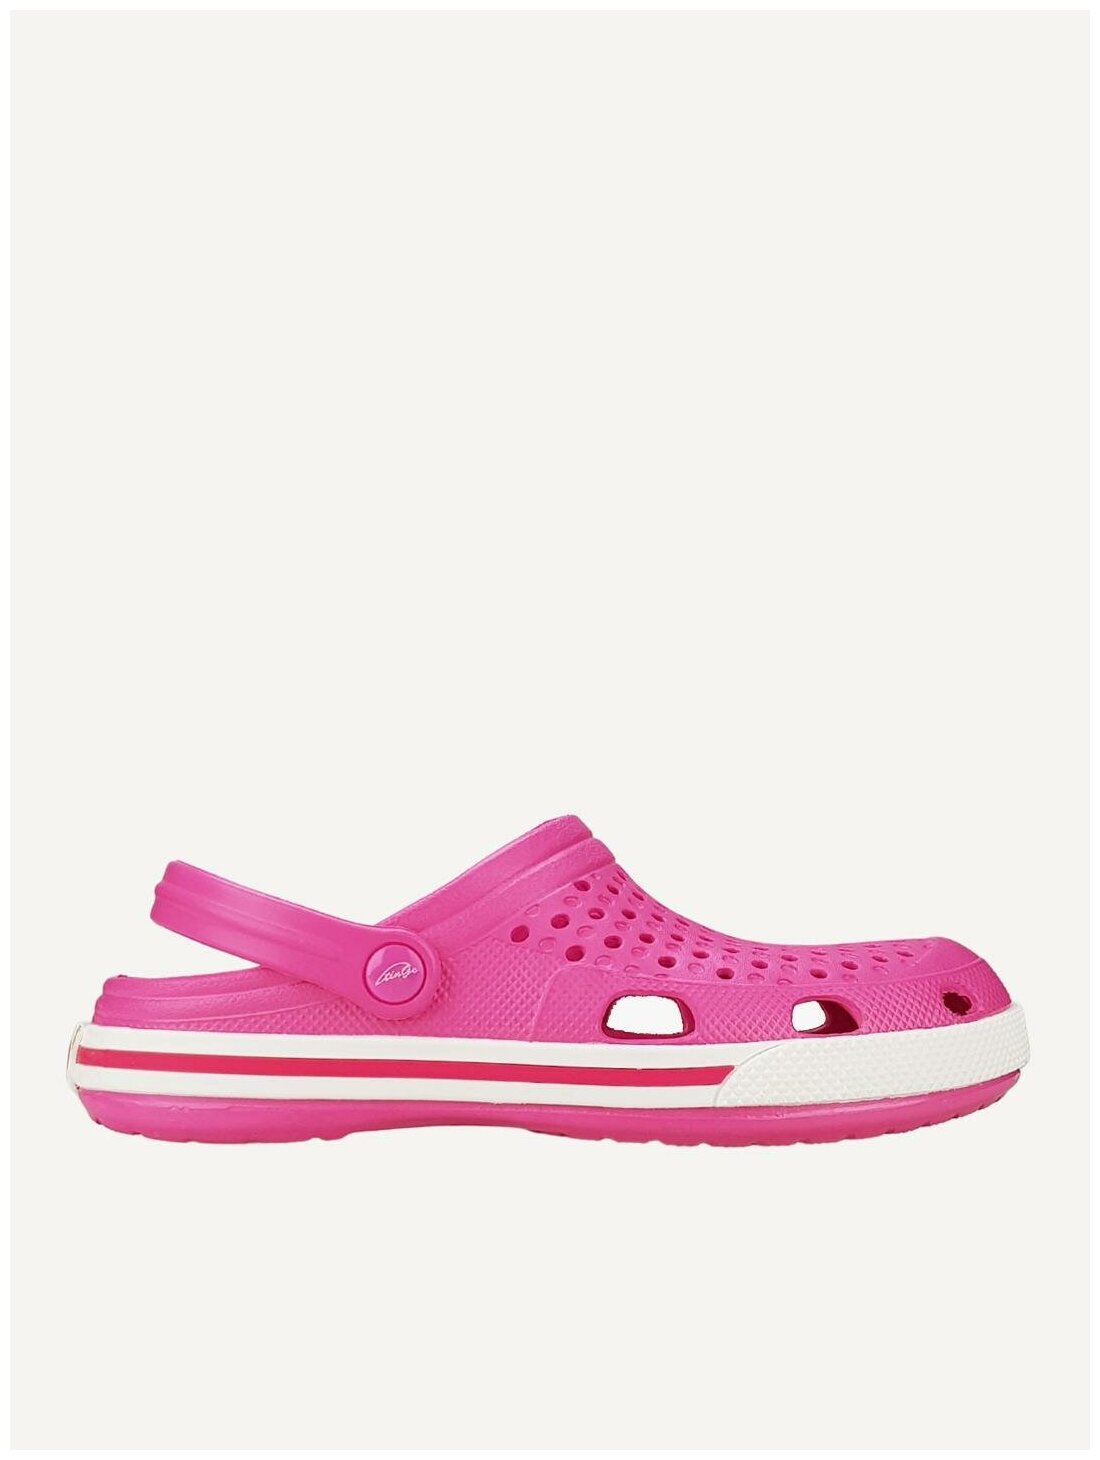 Кроксы для девочек цвет розовый бренд TinGo артикул RT1815 розовый